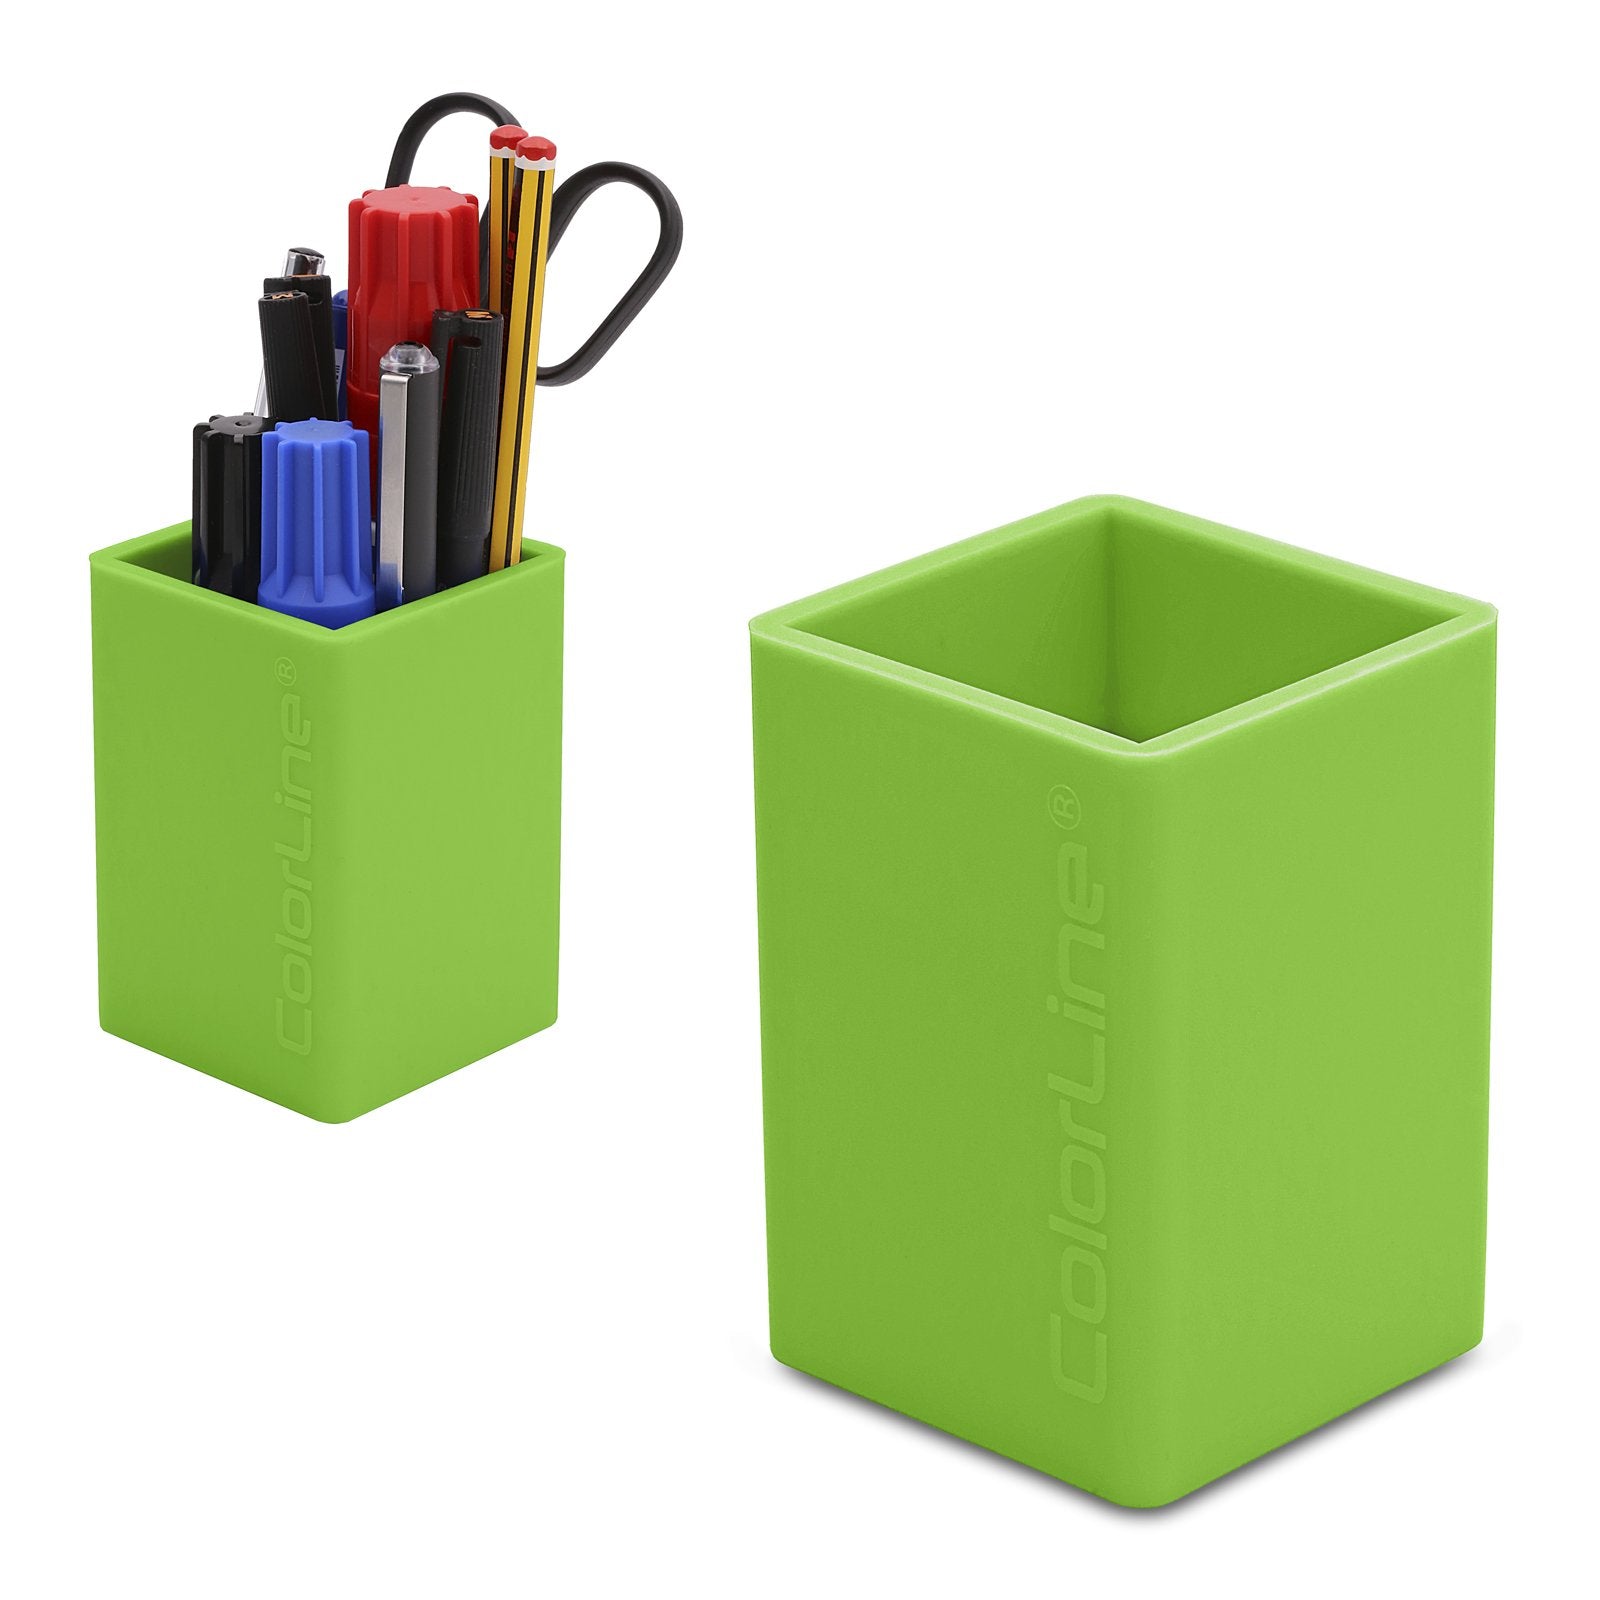 COLORLINE - Cubilete Porta Lápices Cuadrado en Silicona Ultra Suave. Verde Claro